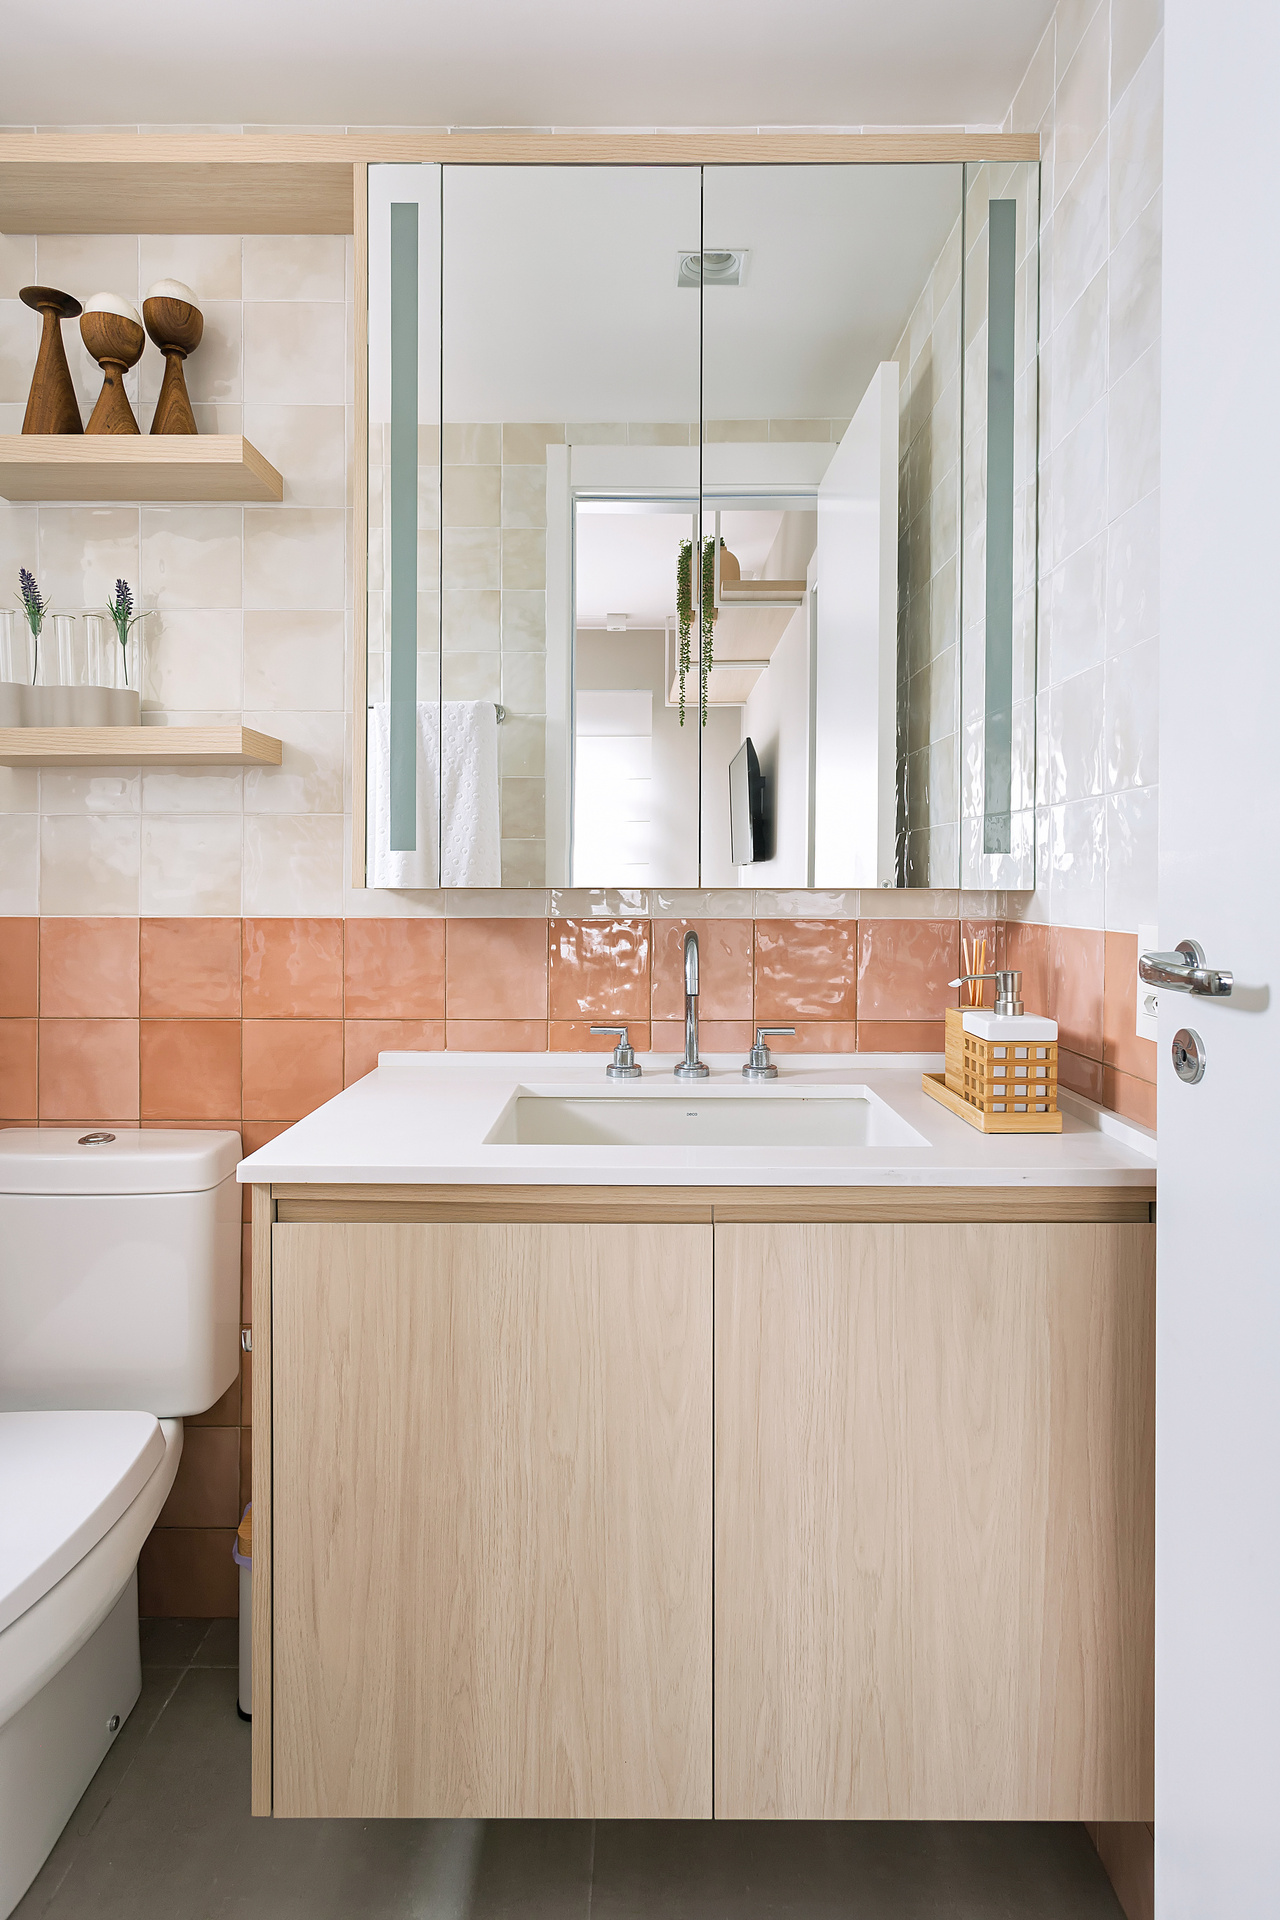 Banheiro com meia parede em revestimento na cor pêssego, armários em madeira com bancada clara, prateleiras com enfeites e espelho